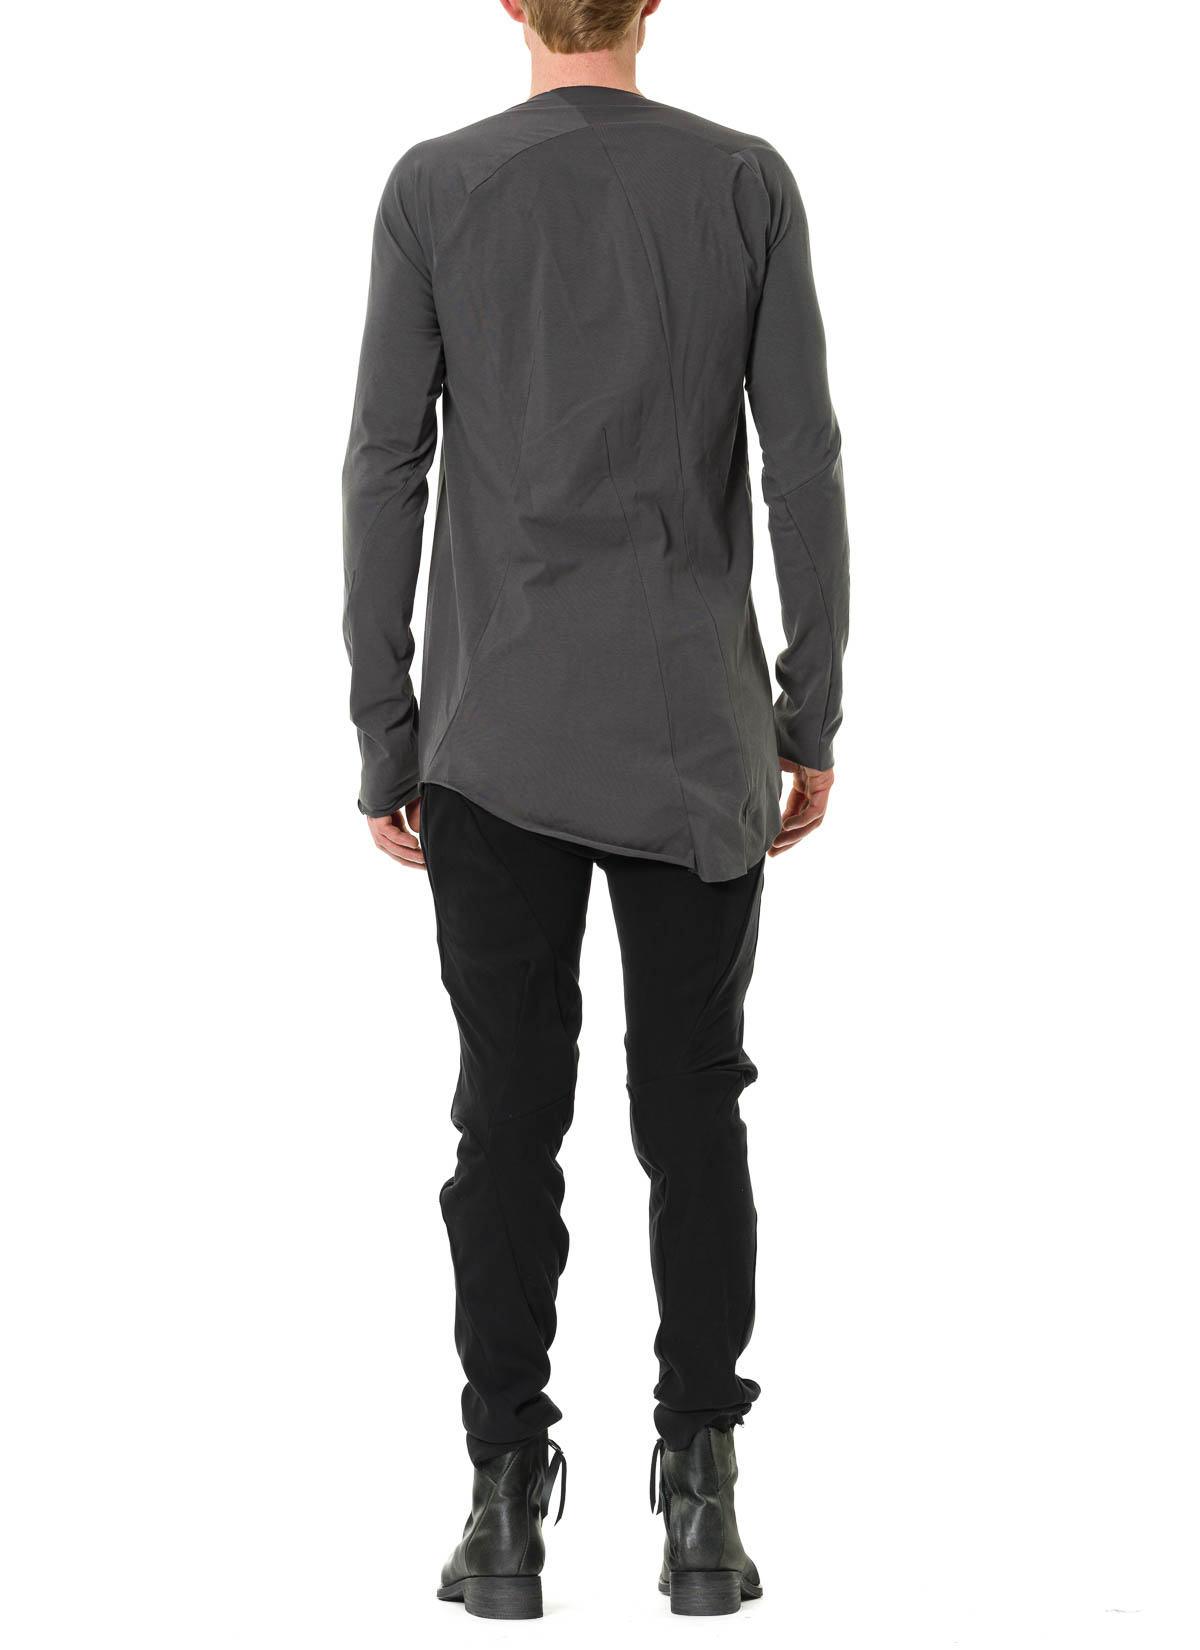 hide-m | LEON EMANUEL BLANCK Distortion LS Curved T-Shirt, grey co